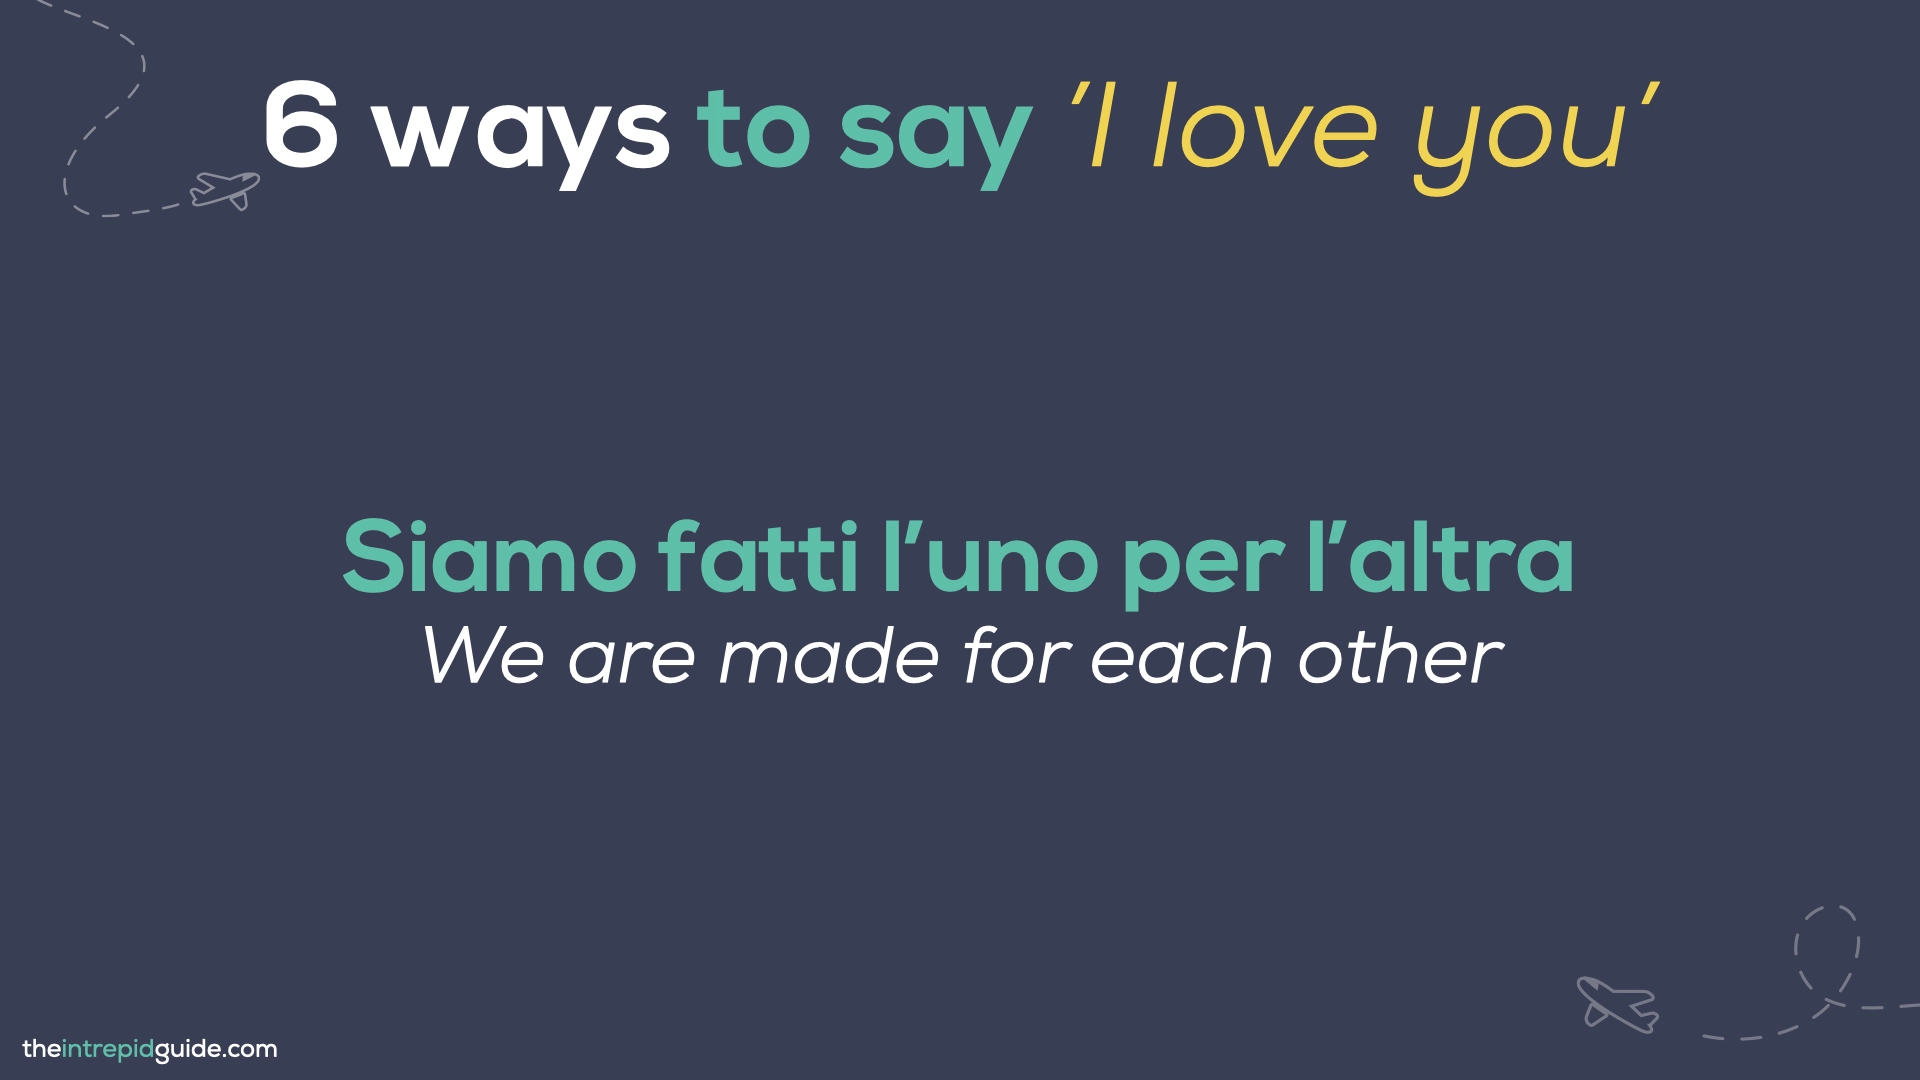 How to say 'I love you' in Italian - Siamo fatti l’uno per l’altra